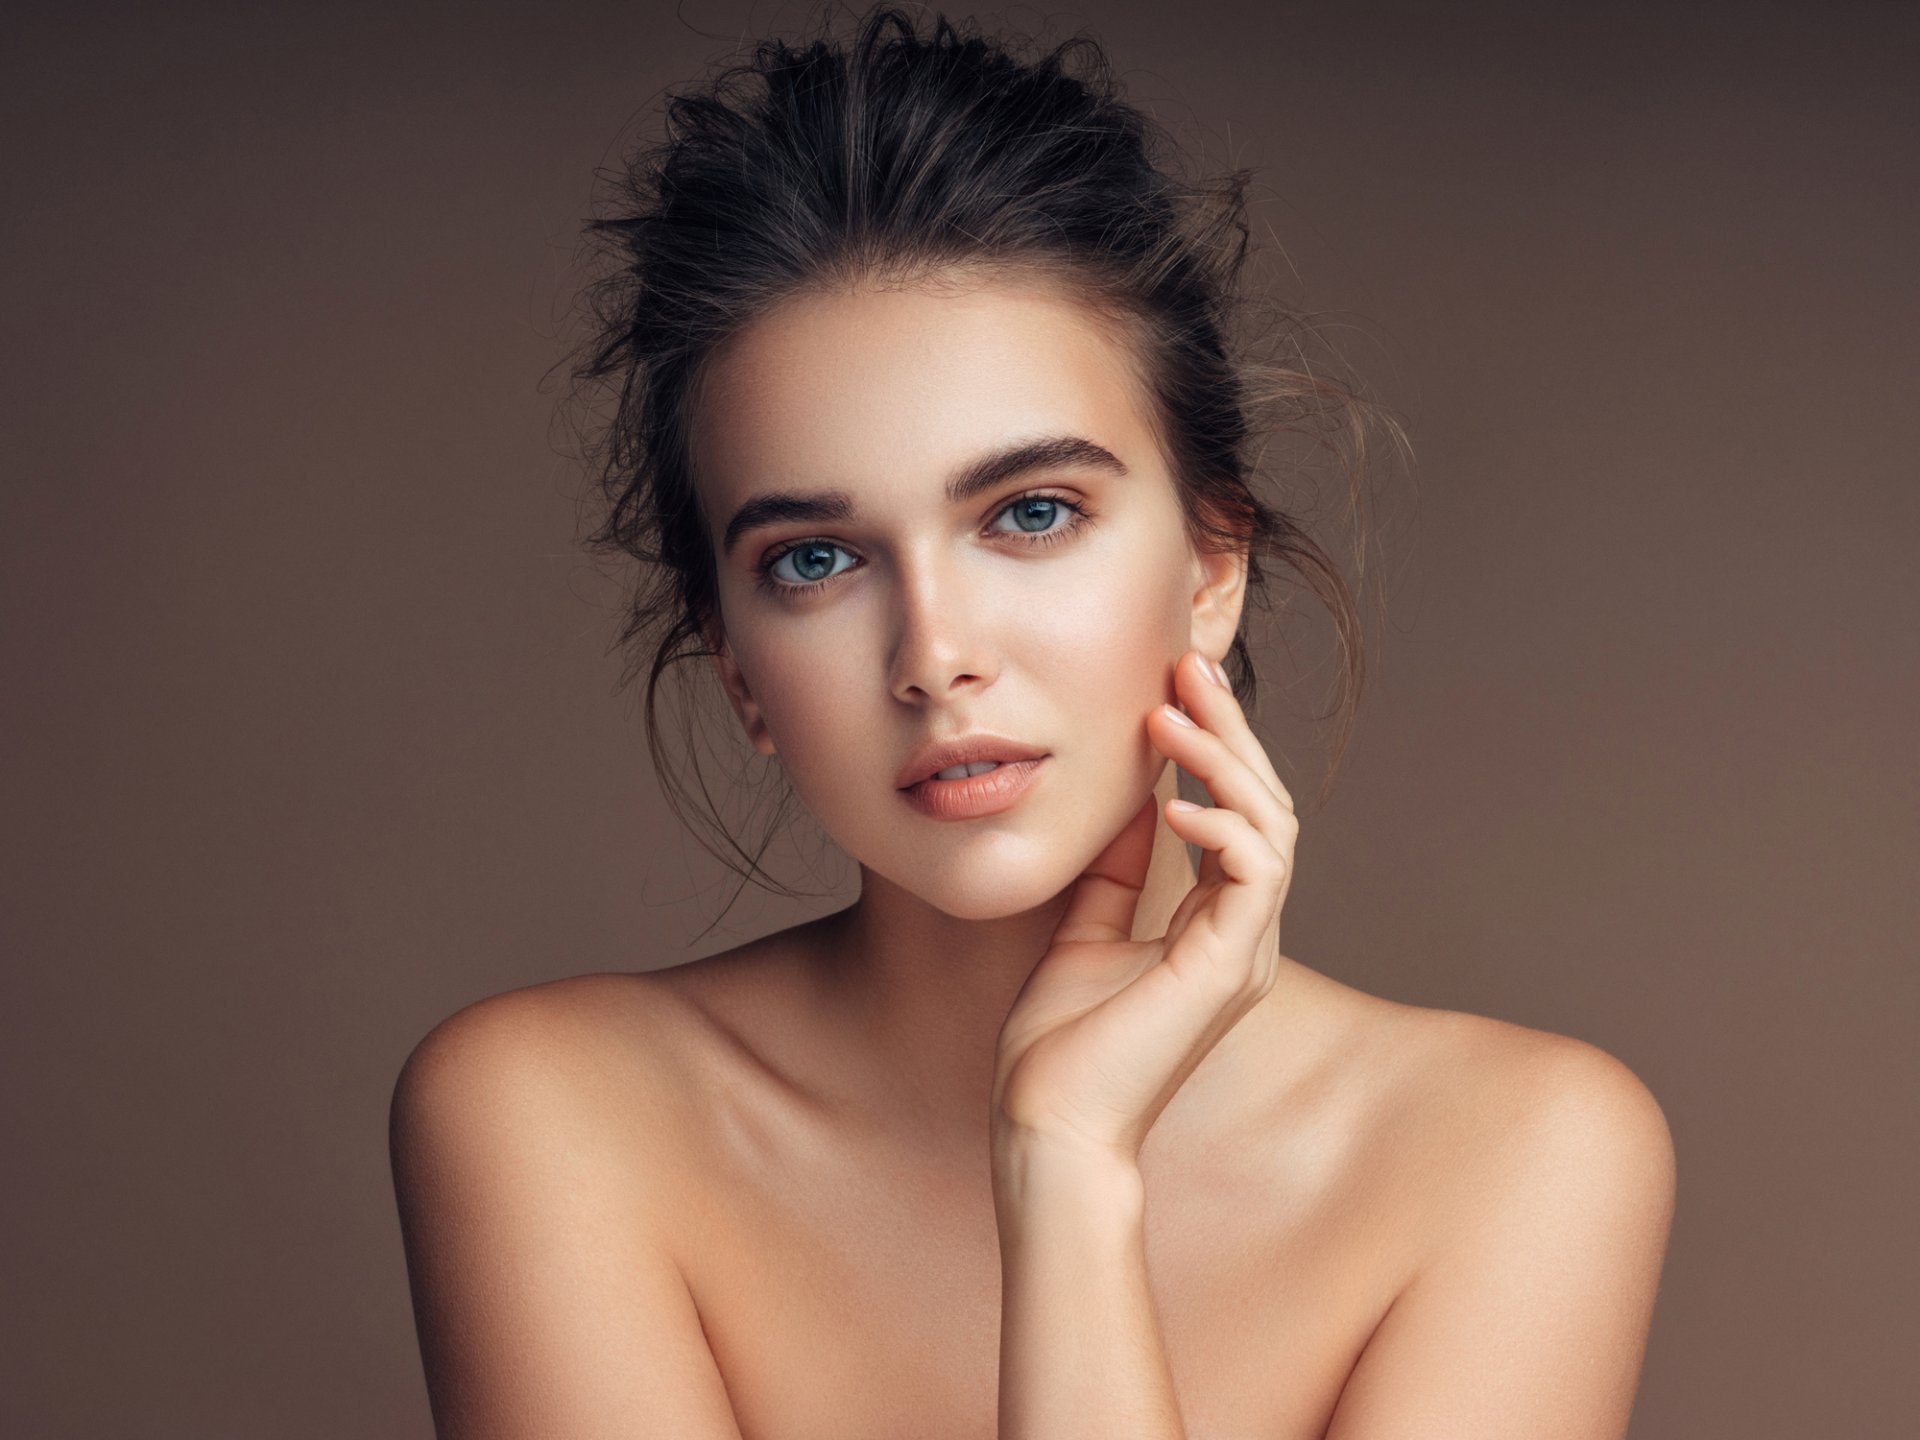 Ung kvinnelig modell for kosmetisk behandling og leppeløft